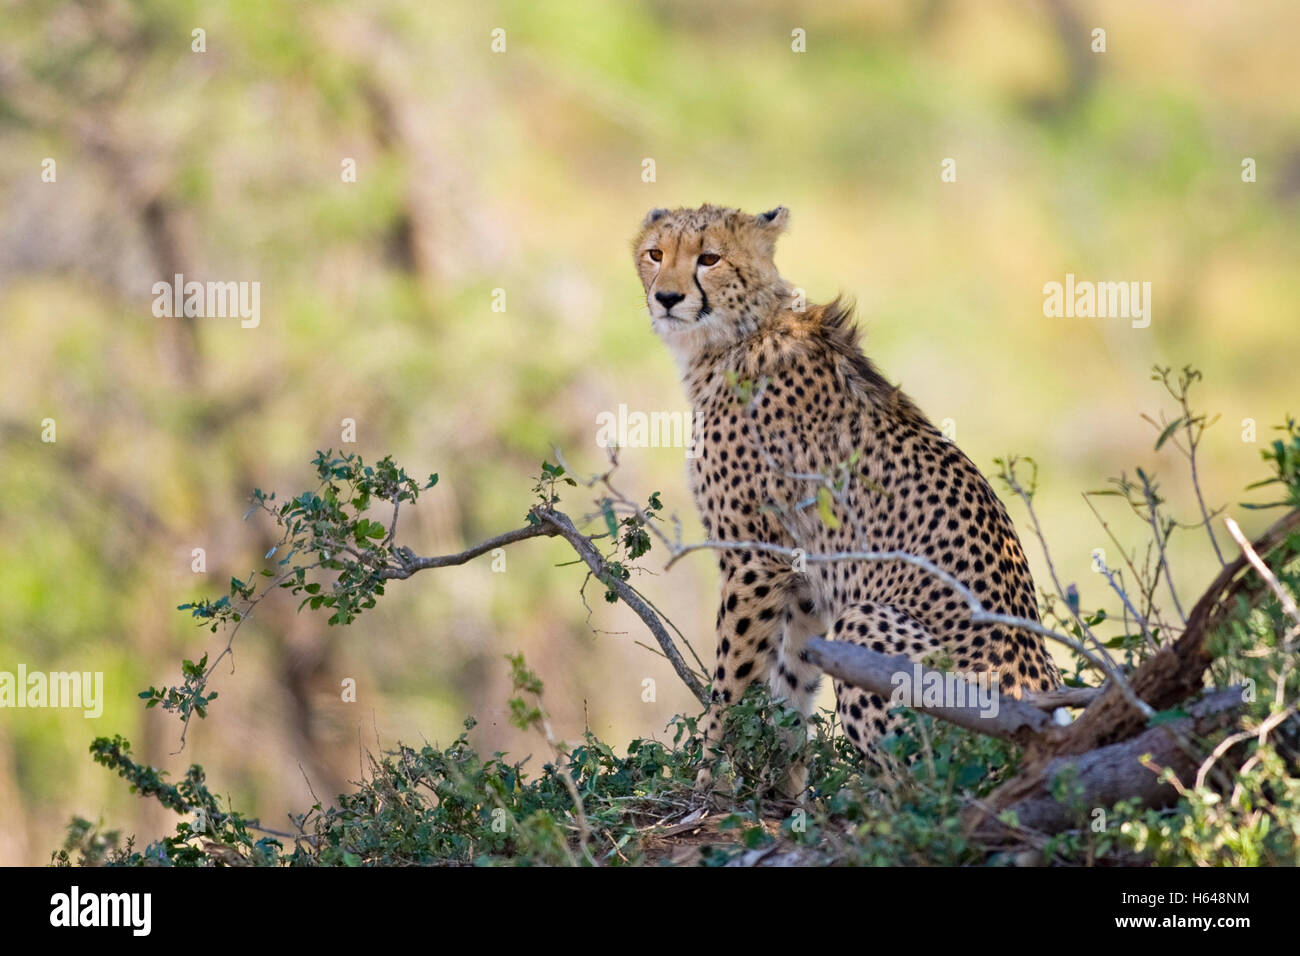 Cheetah (Acinonyx jubatus), Hluhluwe-Imfolozi National Park, South Africa, Africa Stock Photo